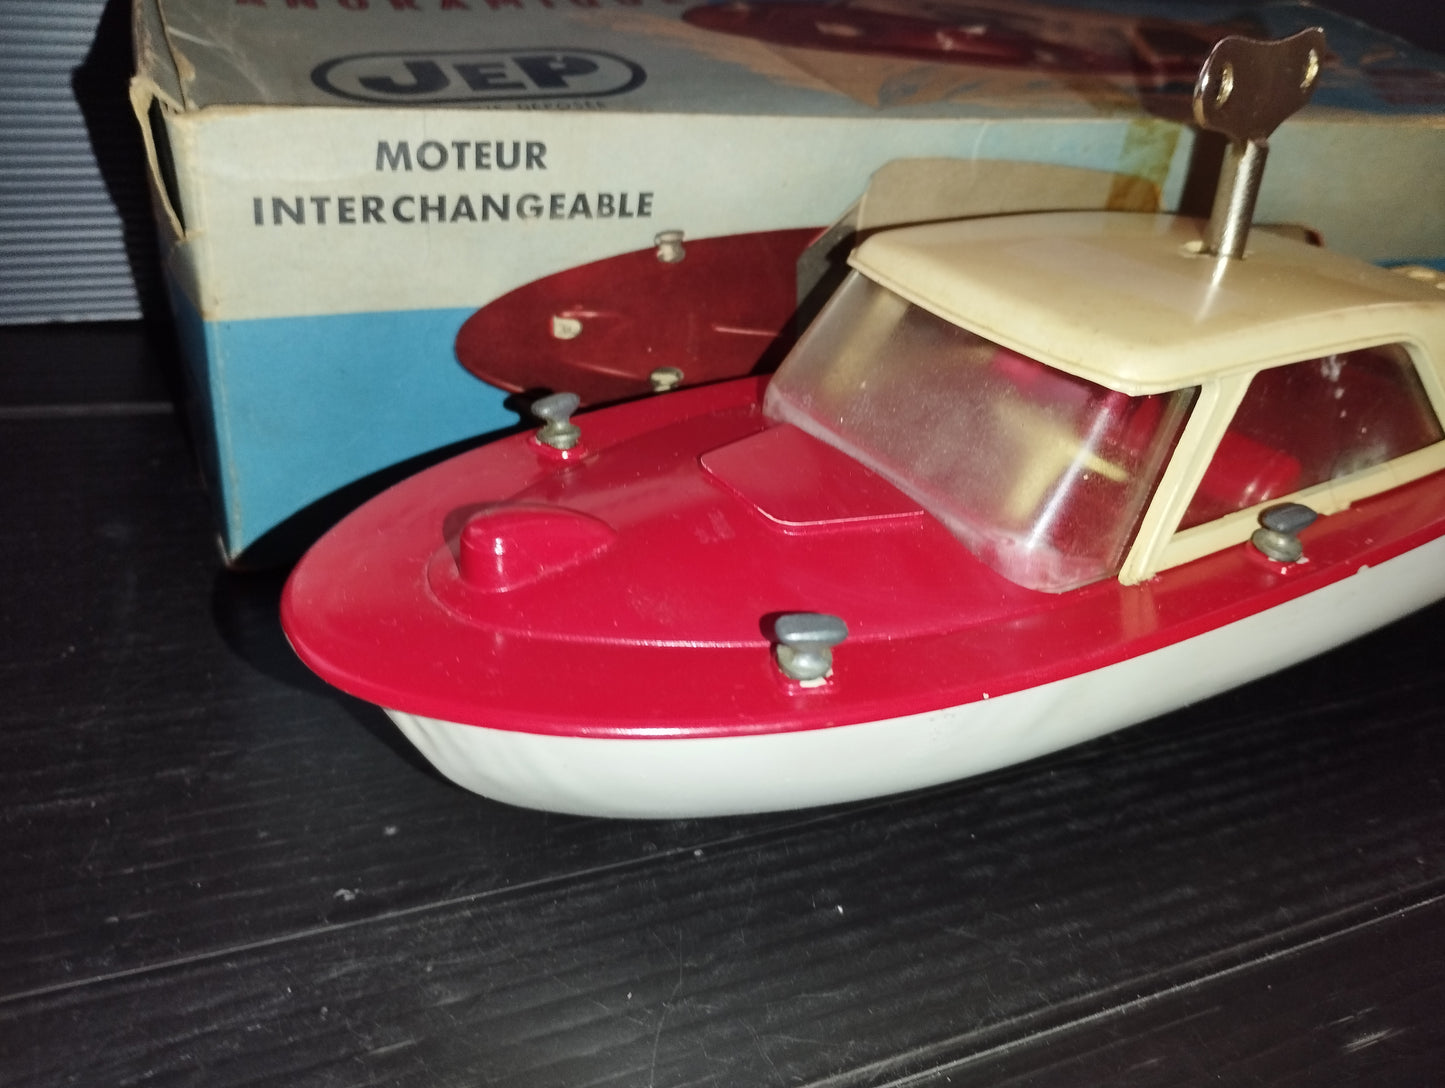 JEP motorboat model

 Made in France

 1950s